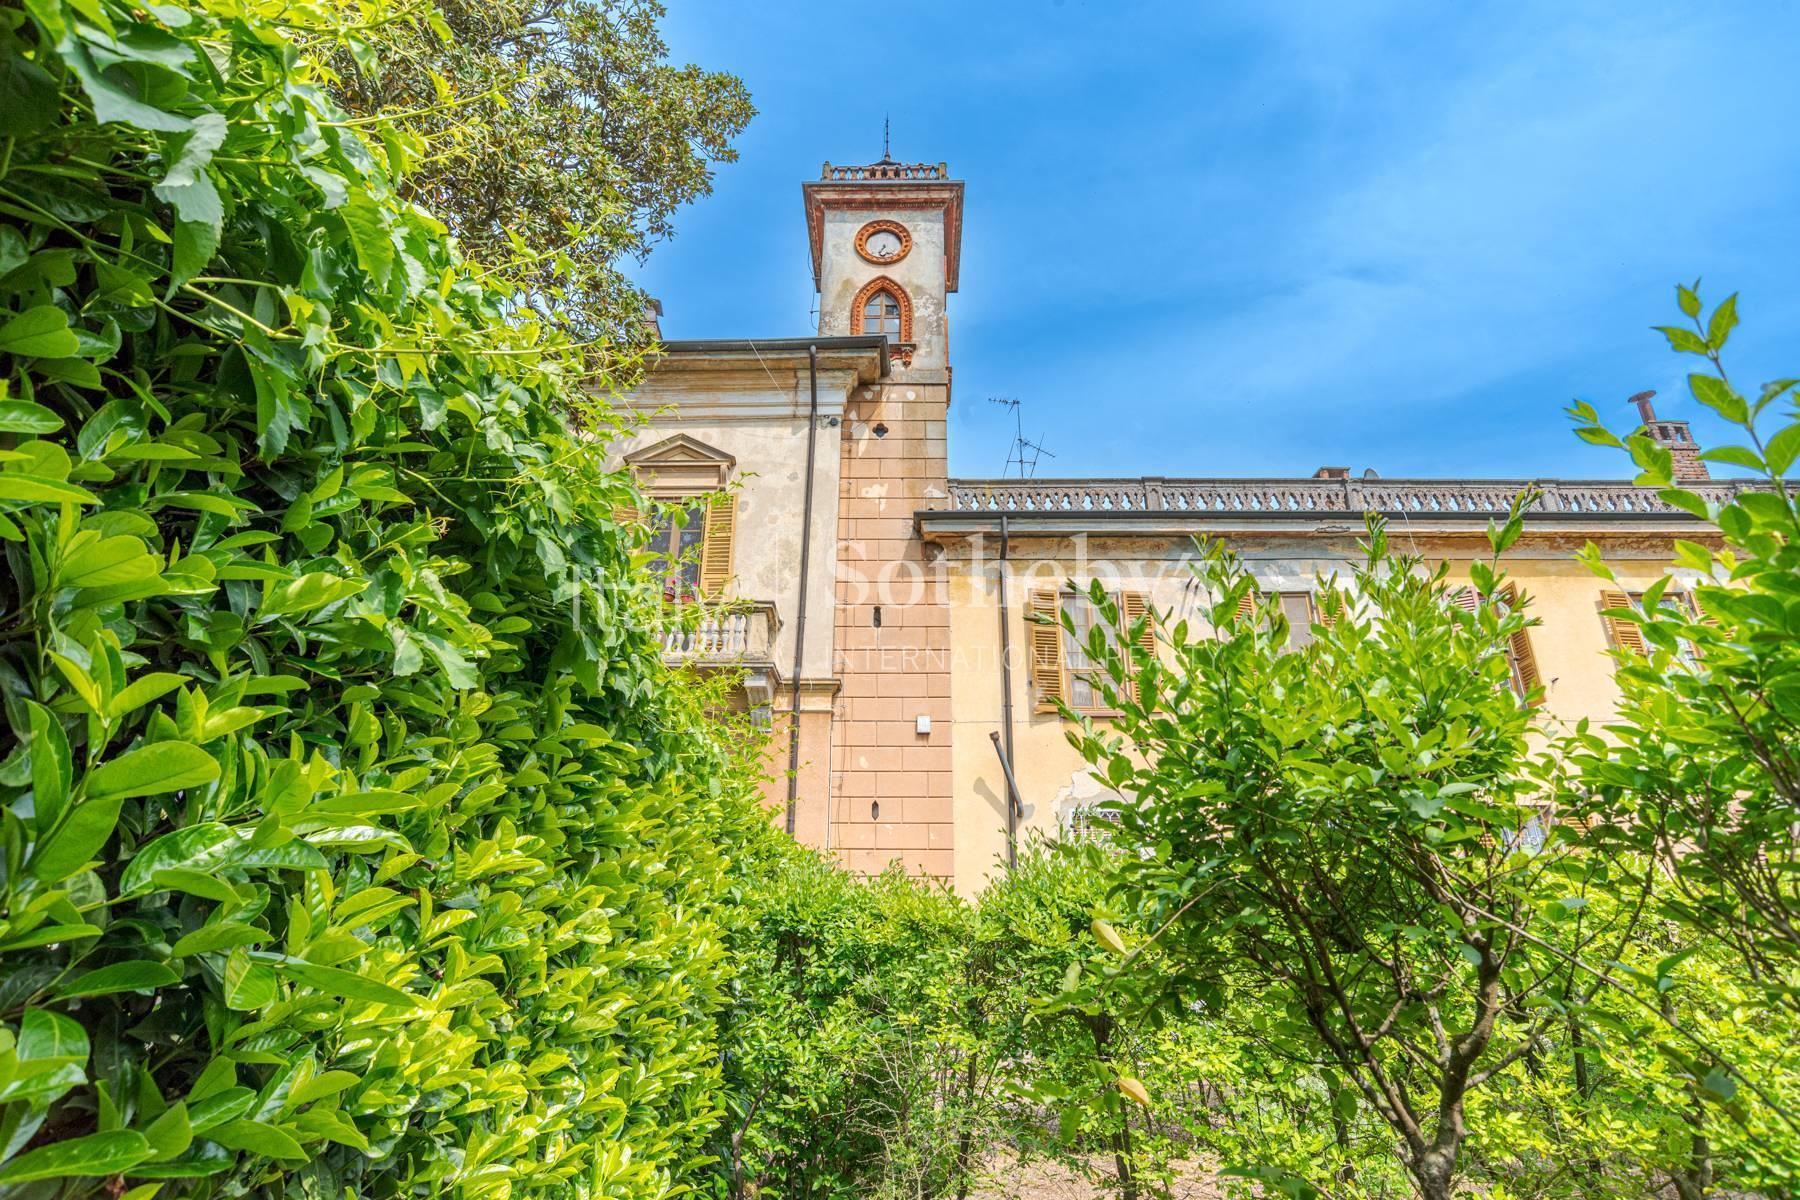 Cascina Bella - 18th century villa with park in Oltrepo' Pavese - 21